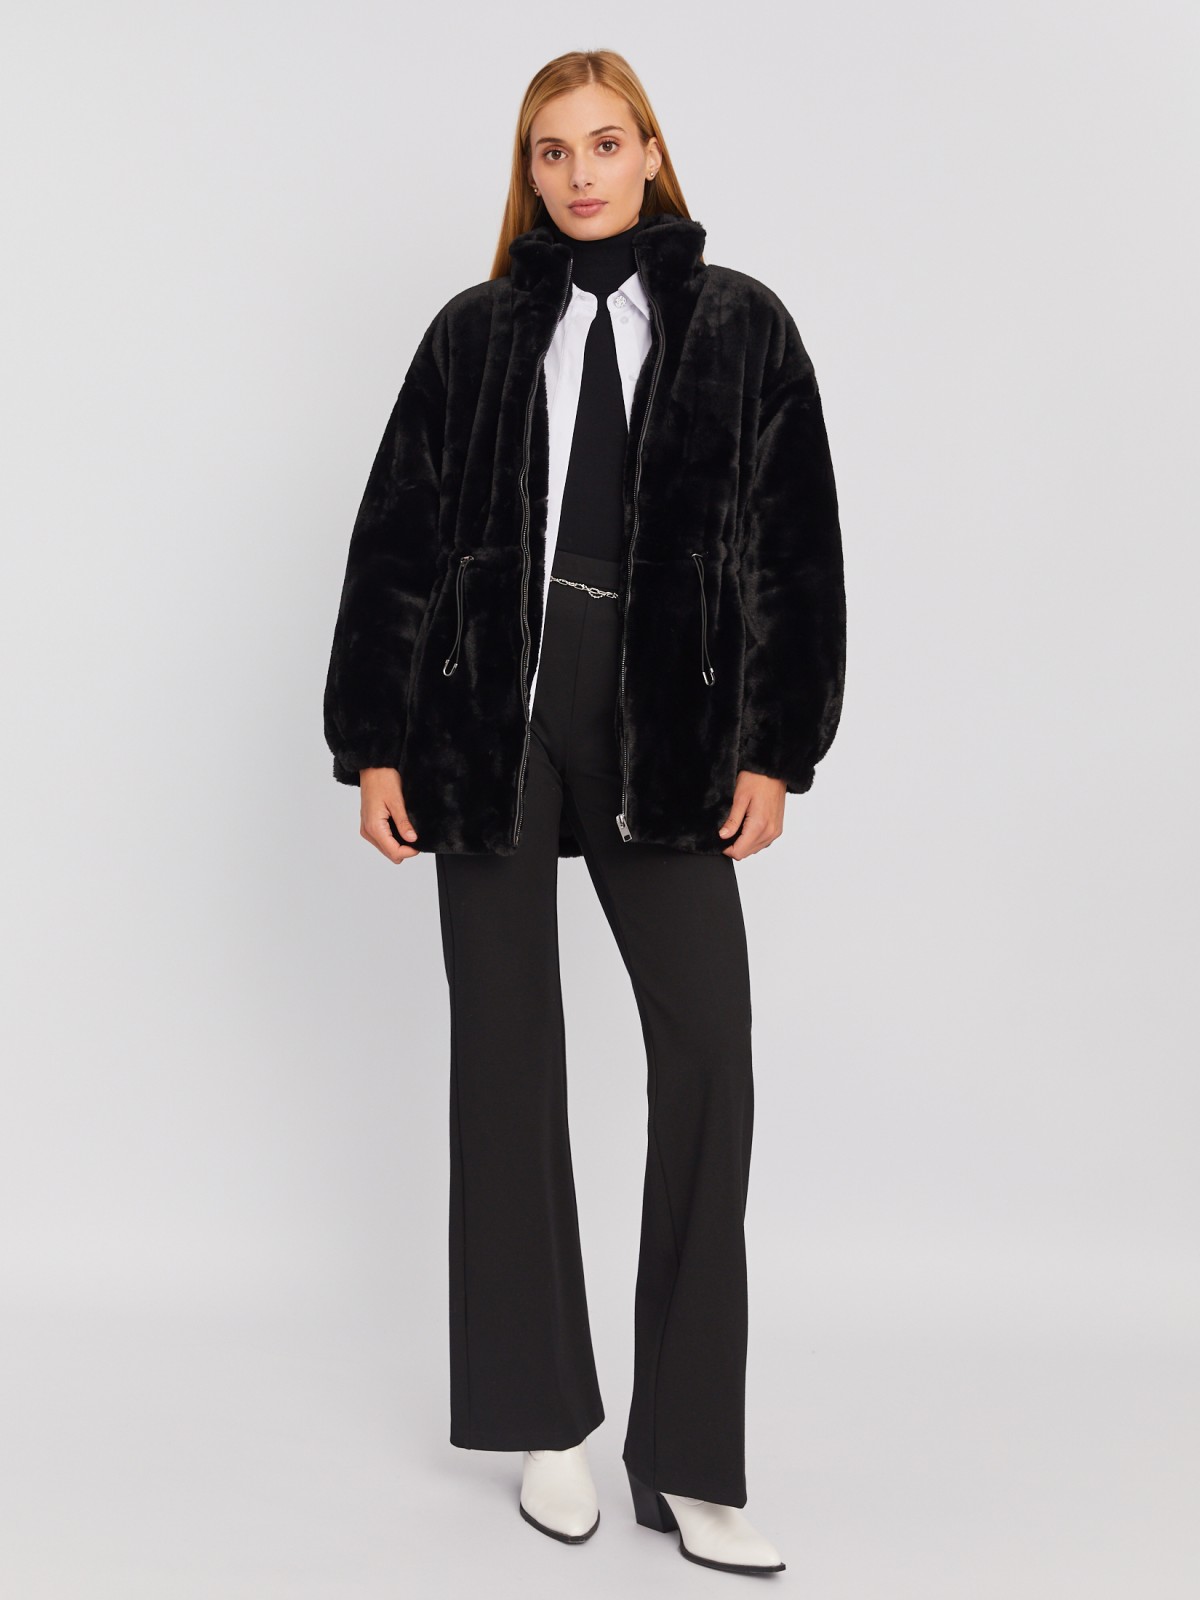 Тёплая куртка-шуба из искусственного меха на синтепоне с регулируемой талией zolla 023335550104, цвет черный, размер S - фото 2